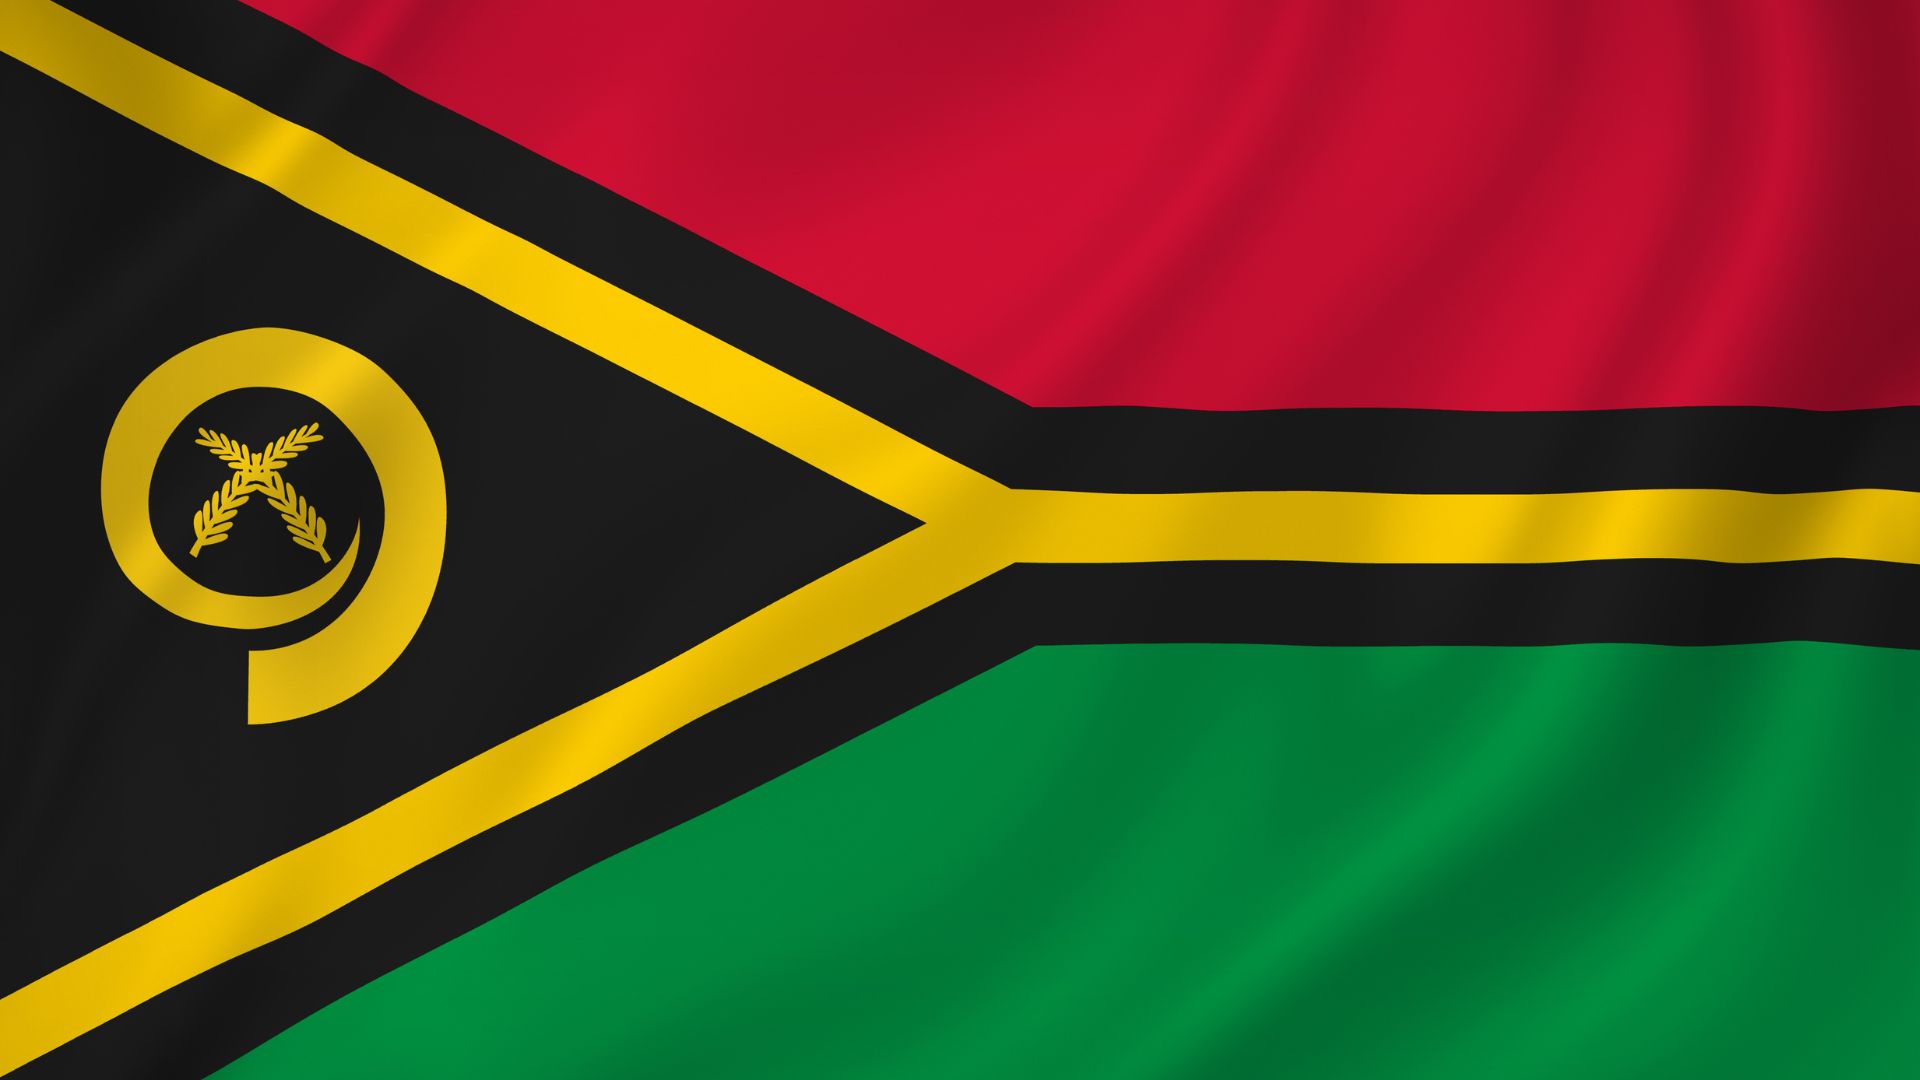 A bandeira de Vanuatu é composta pela cor verde, que representa a natureza, a cor vermelha, que representa o sangue dos que lutaram pela independência, o amarelo, que representa a religião majoritária de Vanuatu (cristianismo), e o preto, que representa o povo.